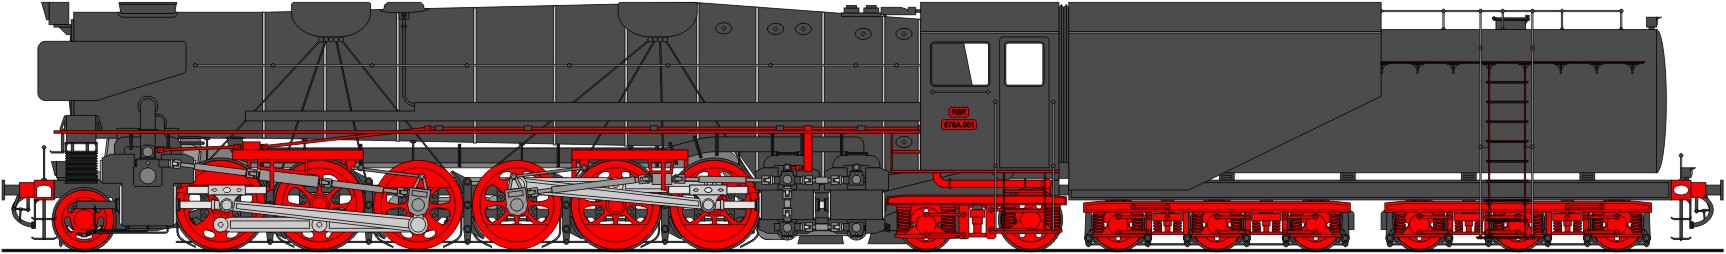 Klasse 675A 1'C+C2' h7v (2009)